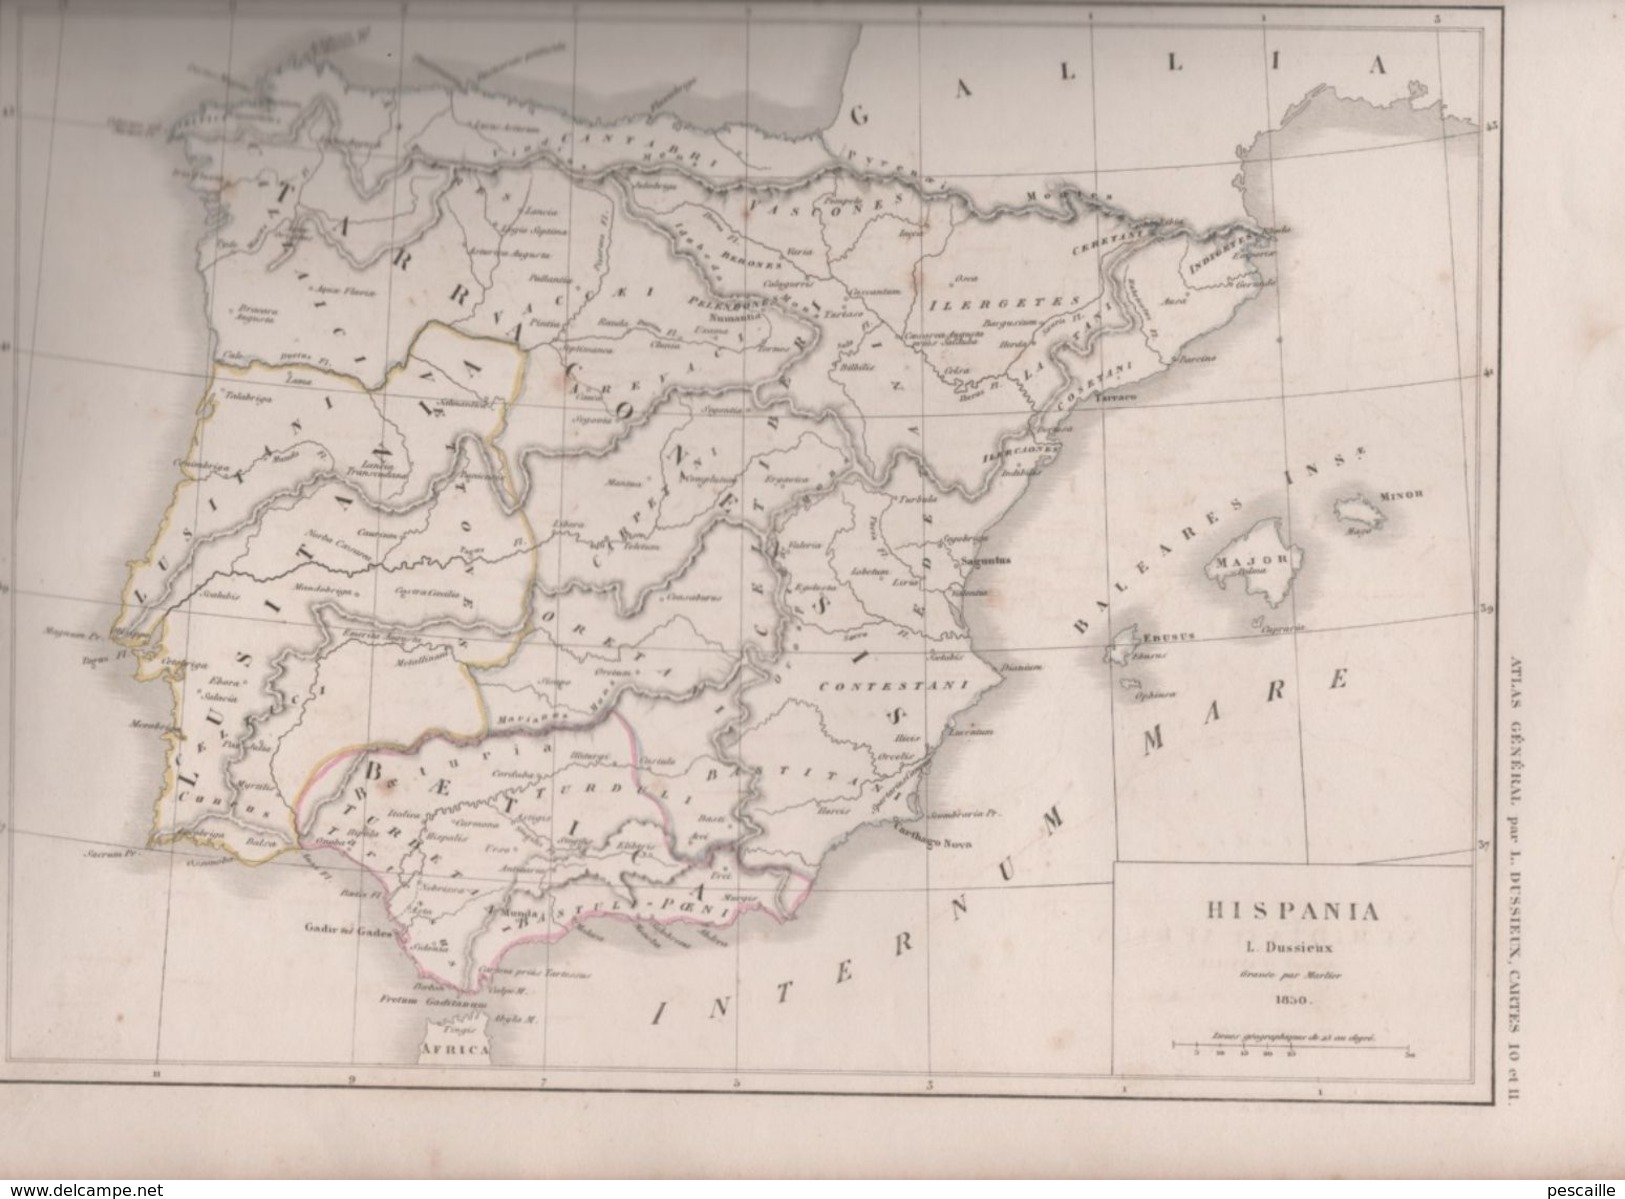 2 CARTES HISPANIA / NUMIDIA ET AFRICA Auctore D'ANVILLE DRESSEES PAR L. DUSSIEUX 1850 - ANTIQUITE - Landkarten